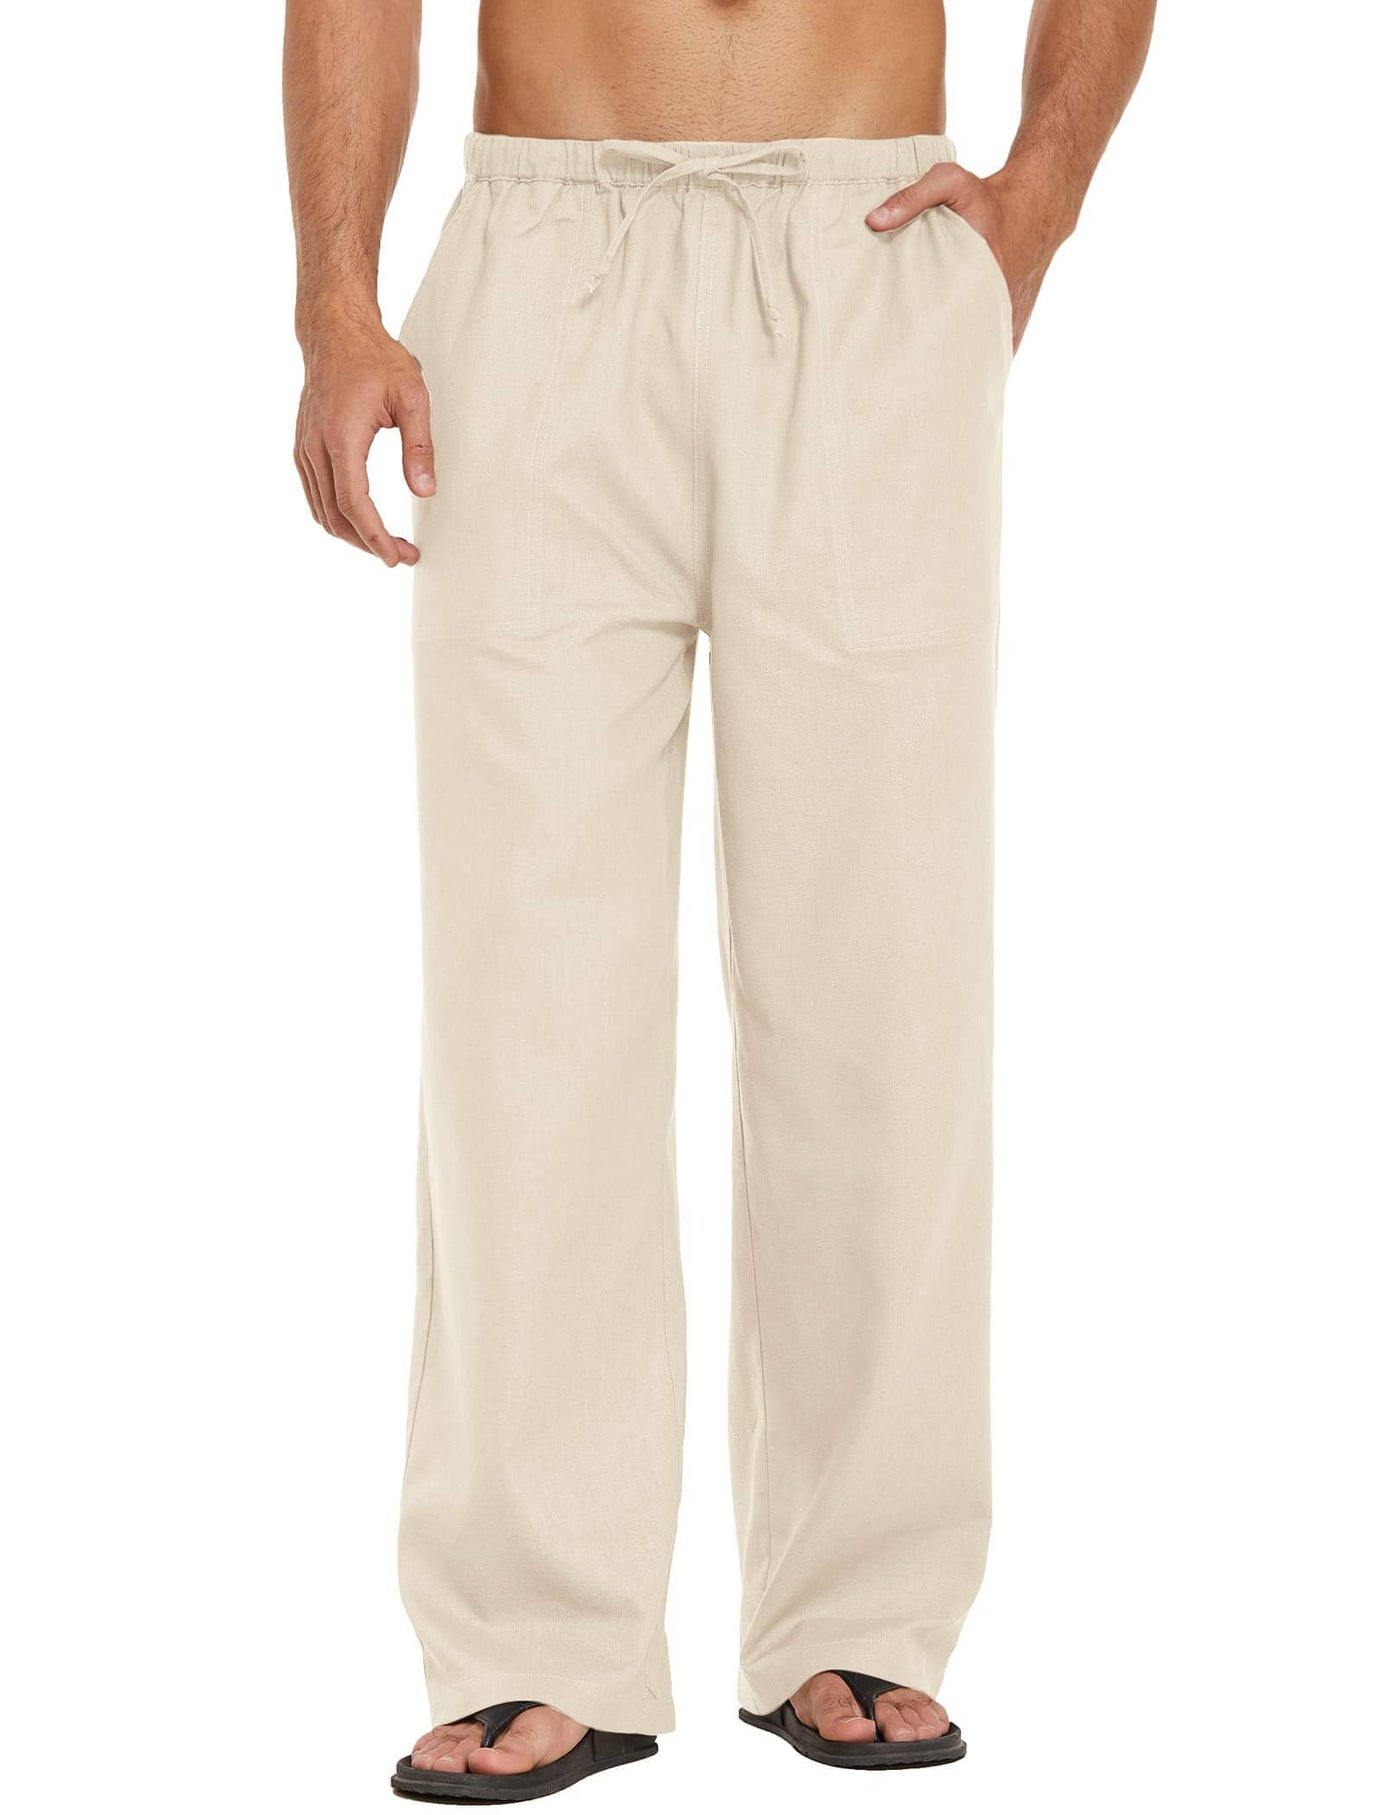 Coofandy Linen Style Elastic Waist Yoga Pants (US Only) Pants coofandy Khaki S 